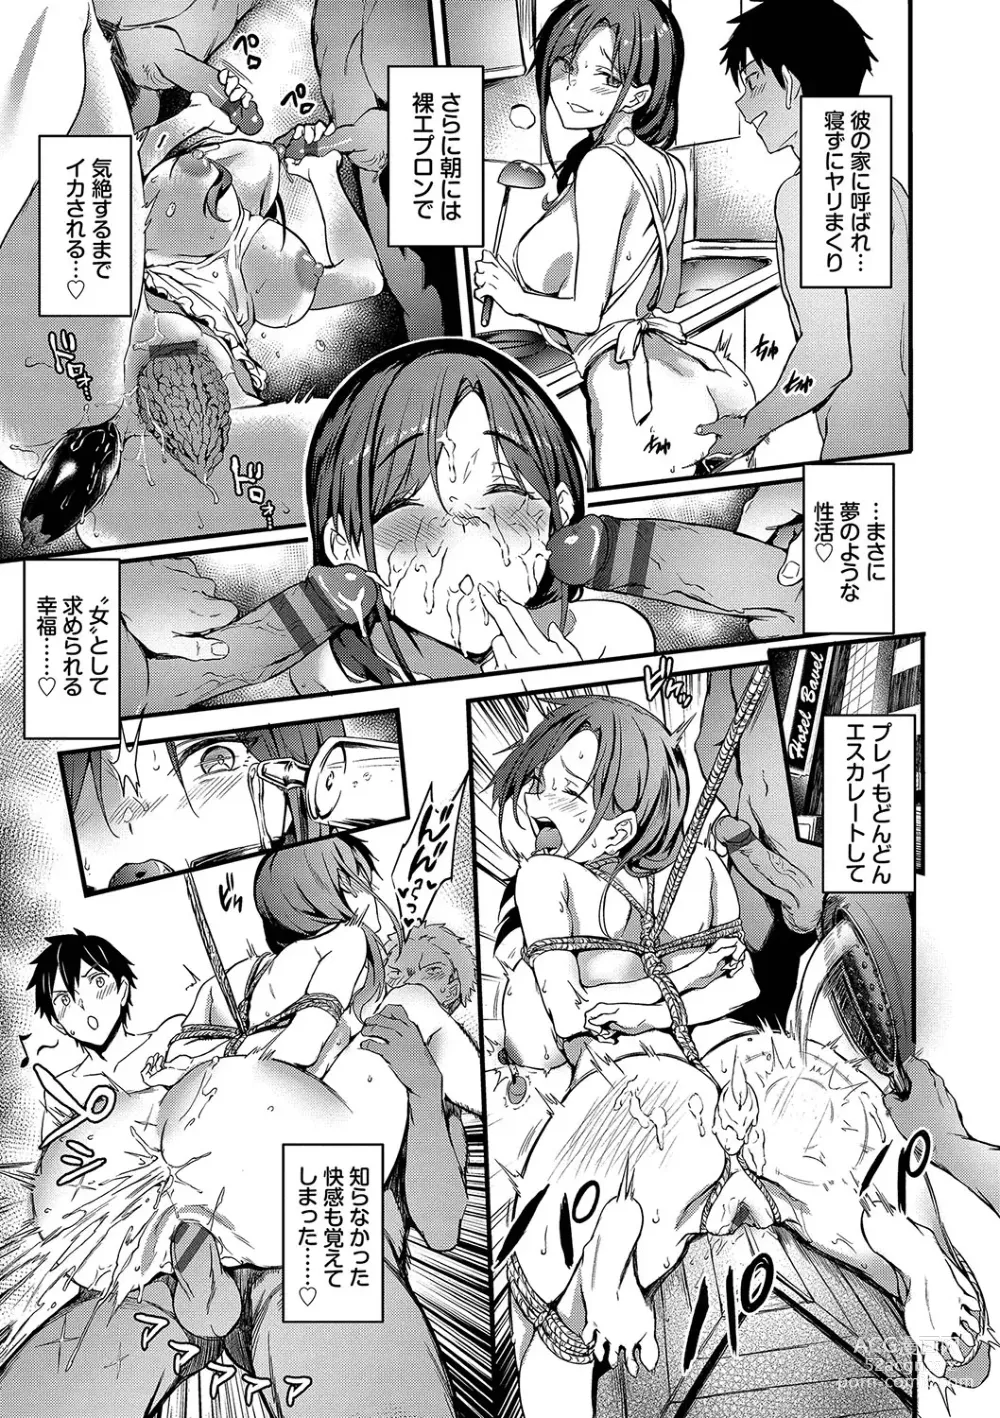 Page 188 of manga Bitch Bitch